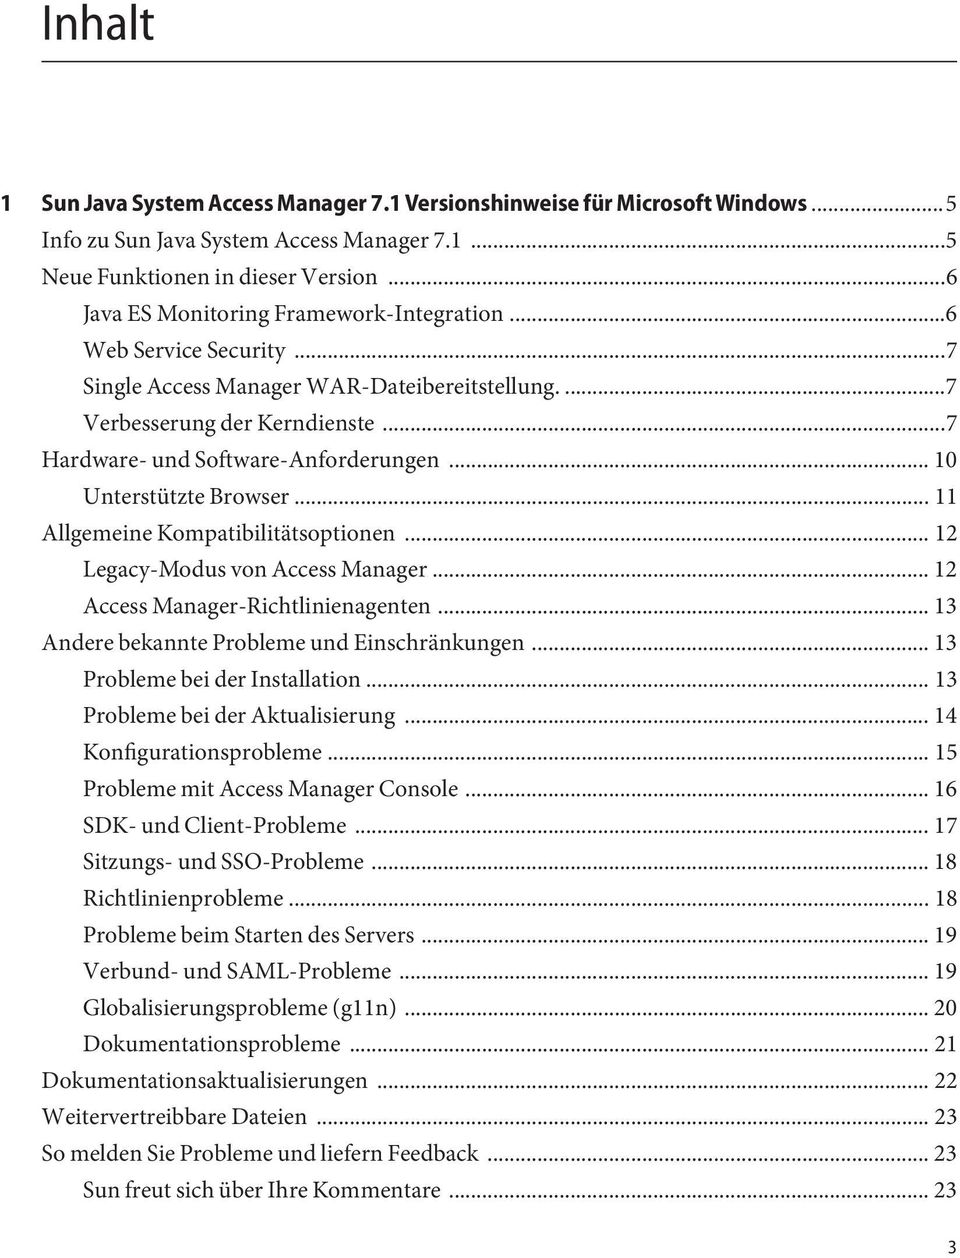 .. 10 Unterstützte Browser... 11 Allgemeine Kompatibilitätsoptionen...12 Legacy-Modus von Access Manager... 12 Access Manager-Richtlinienagenten... 13 Andere bekannte Probleme und Einschränkungen.